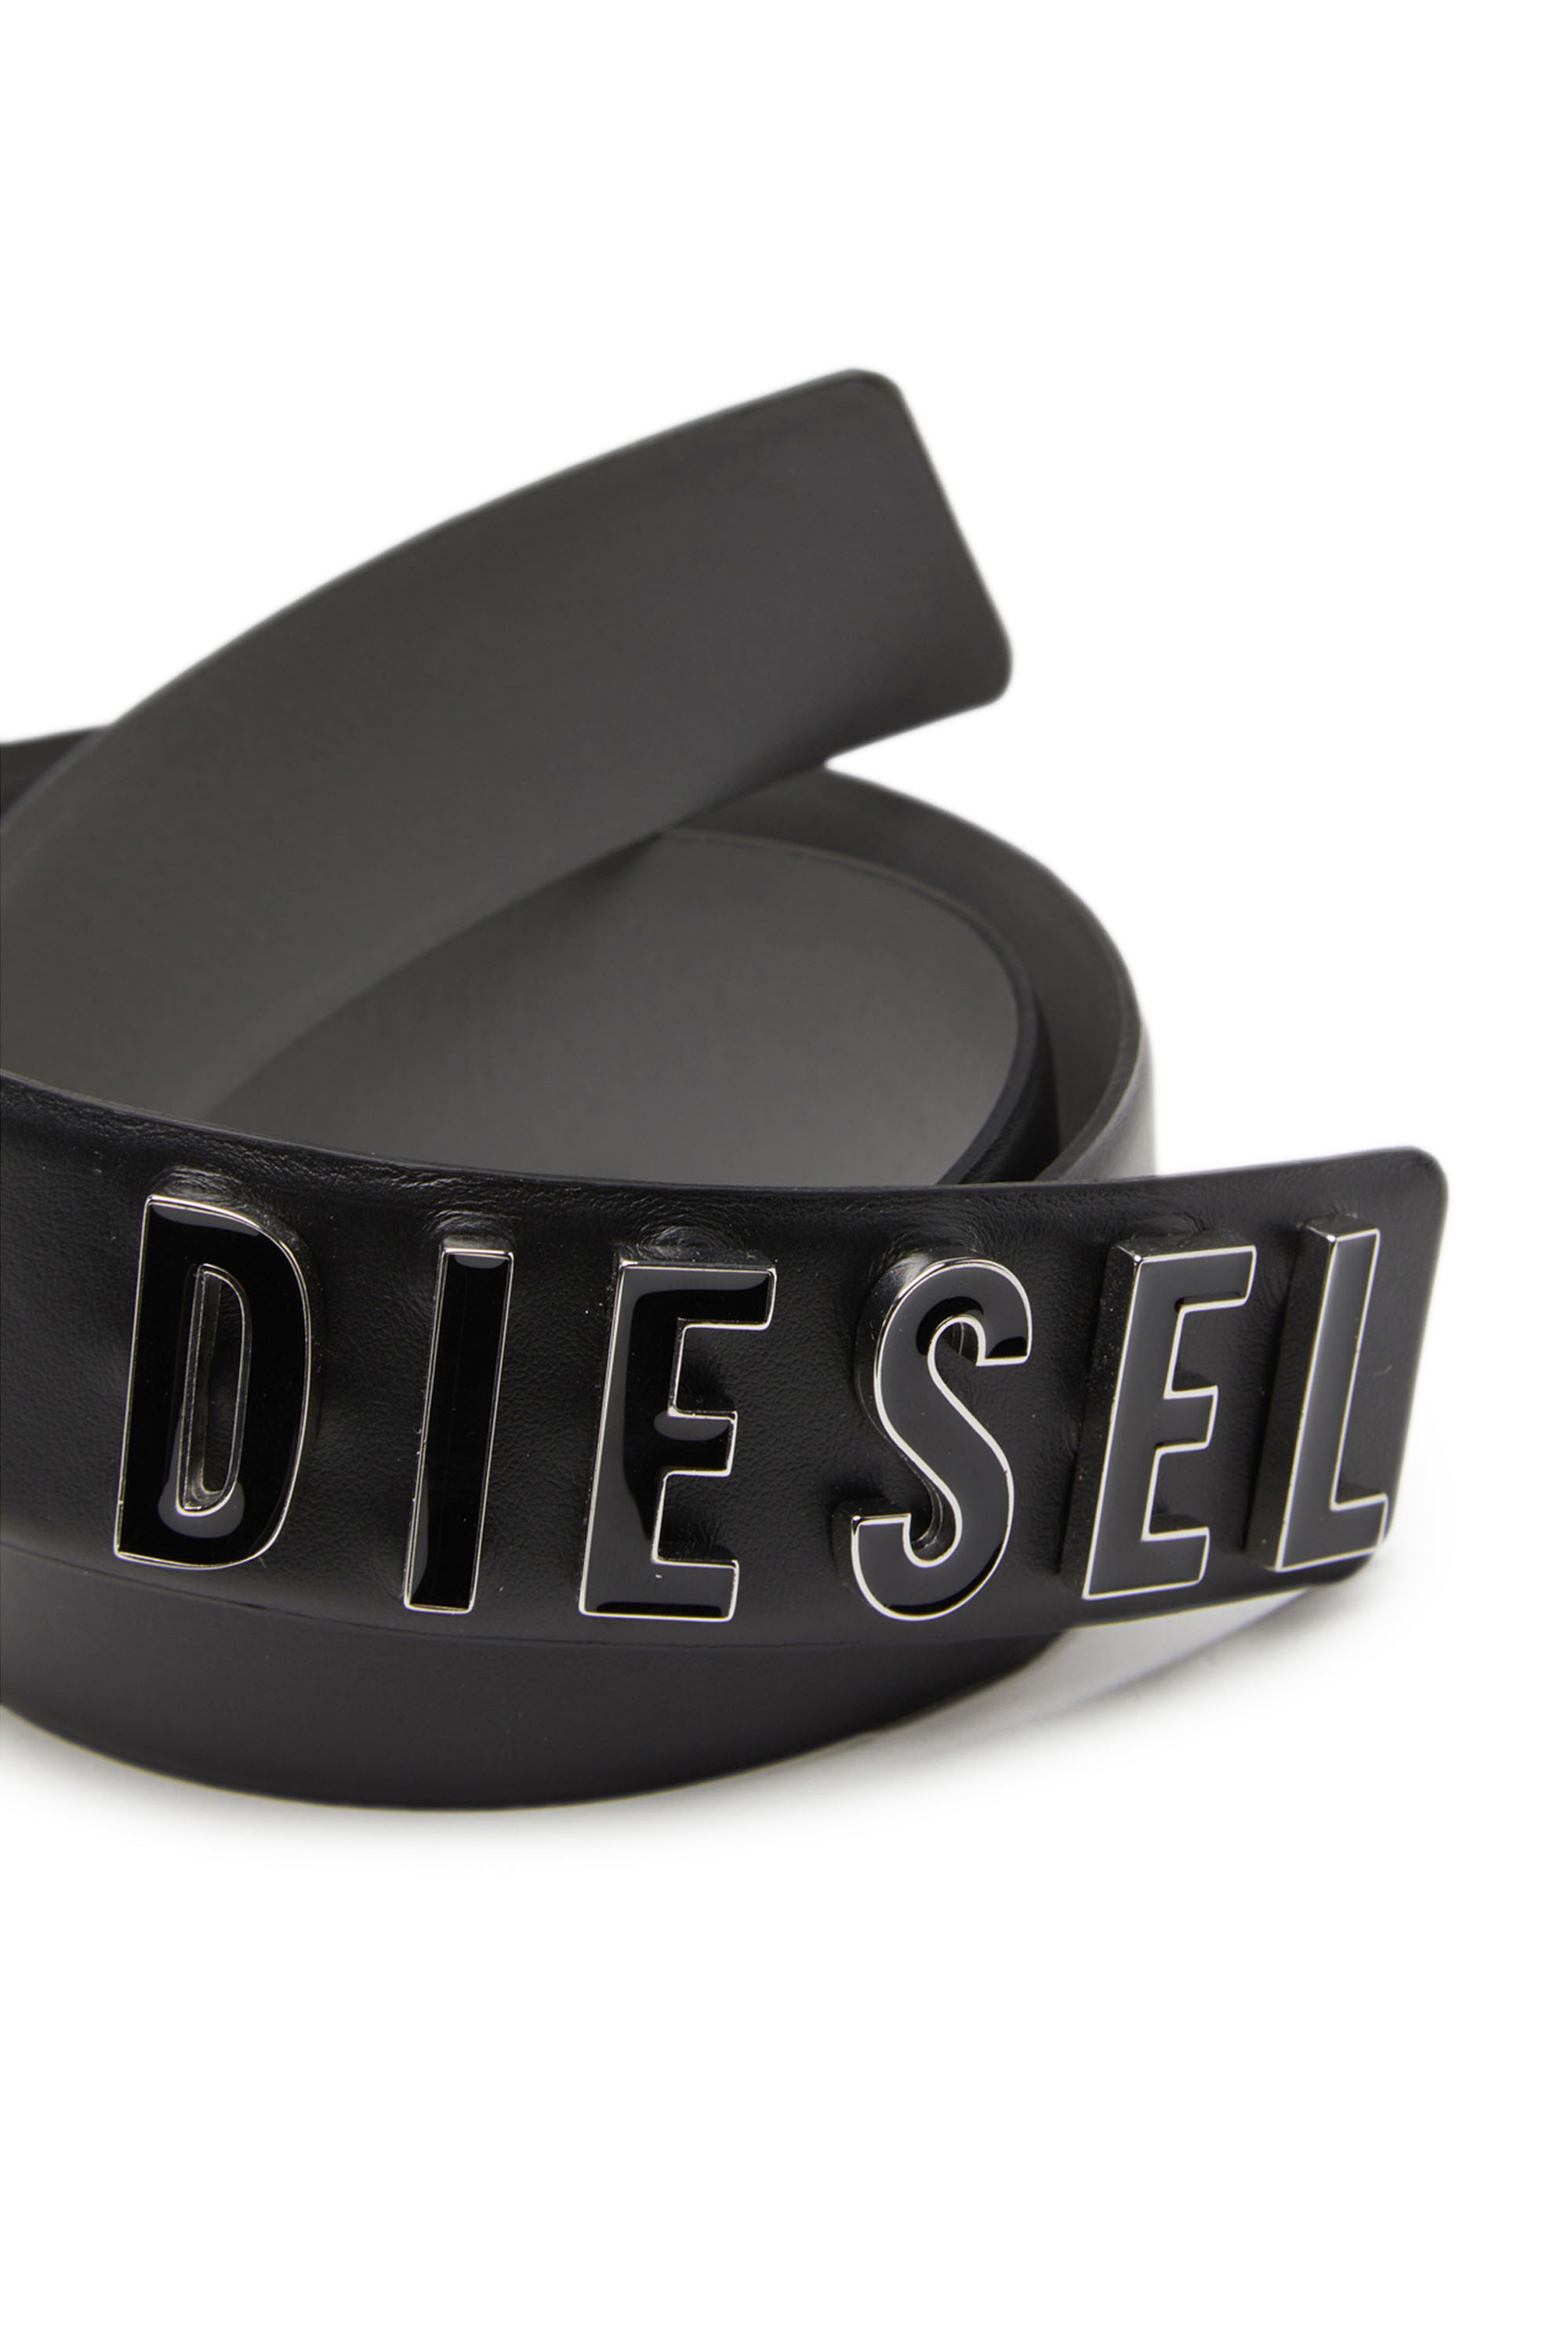 Diesel - B-LETTERS B, Nero - Image 3